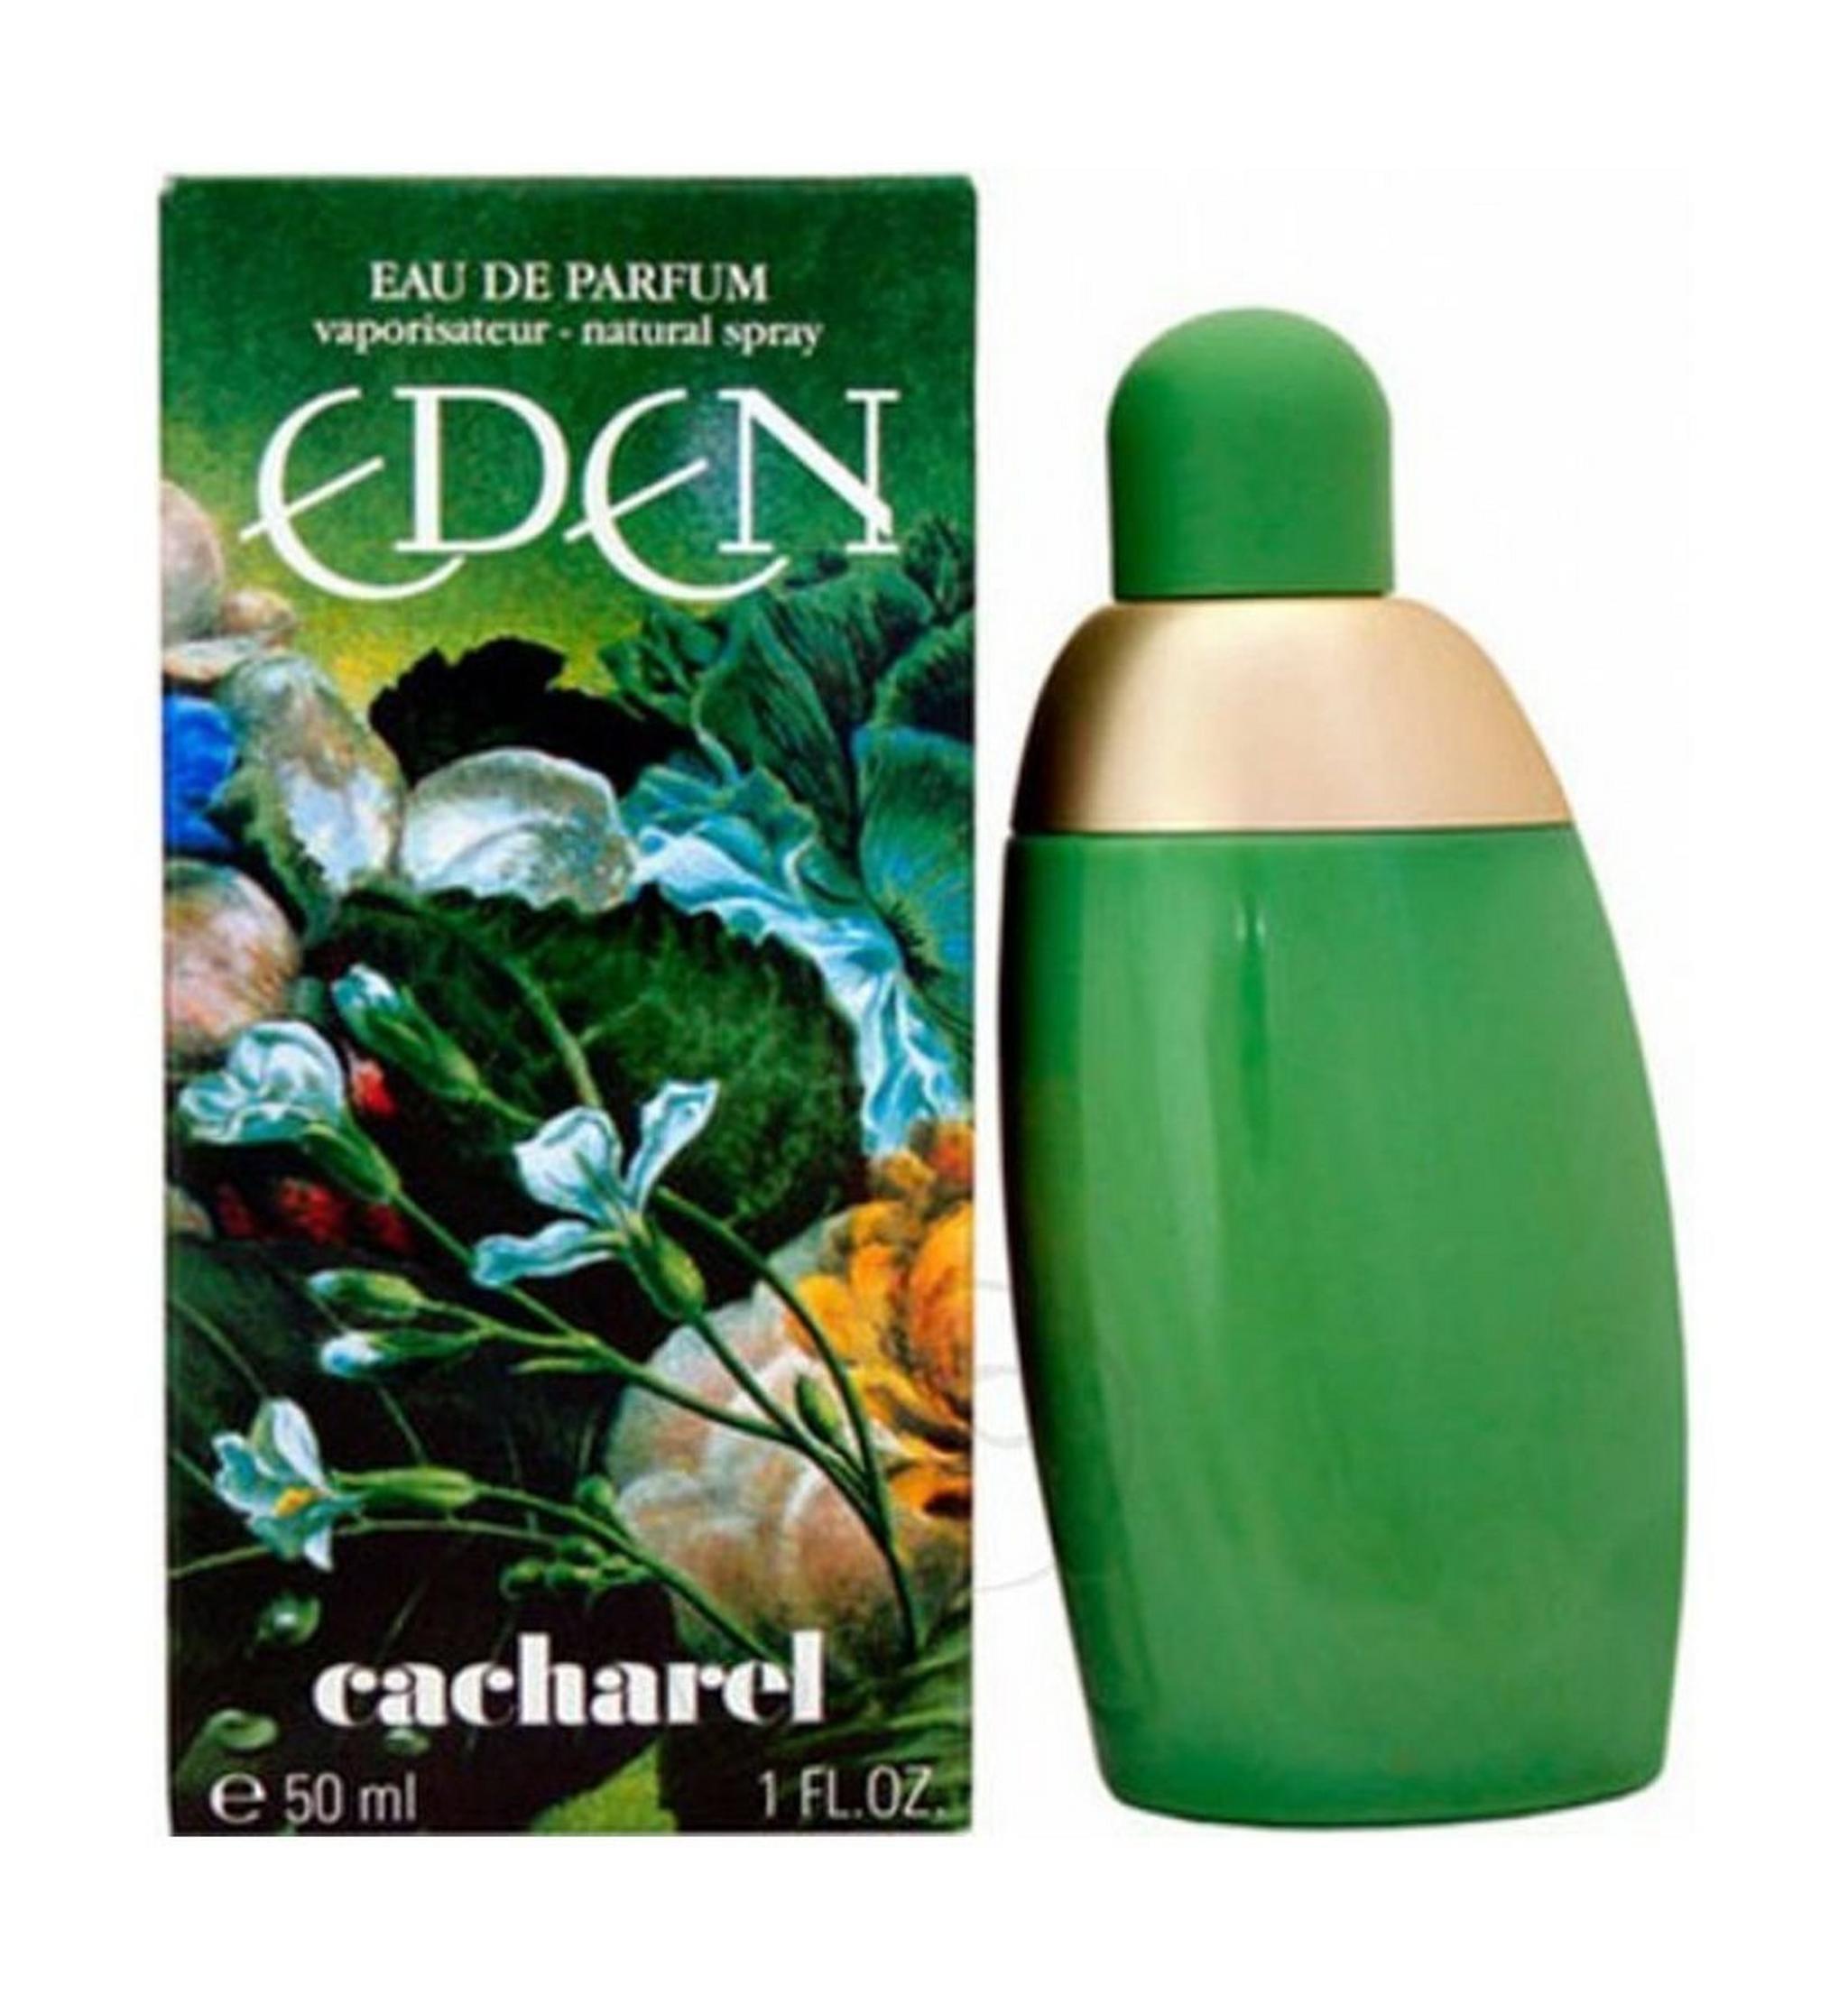 Eden Cacharel Eau de Parfum 50ml